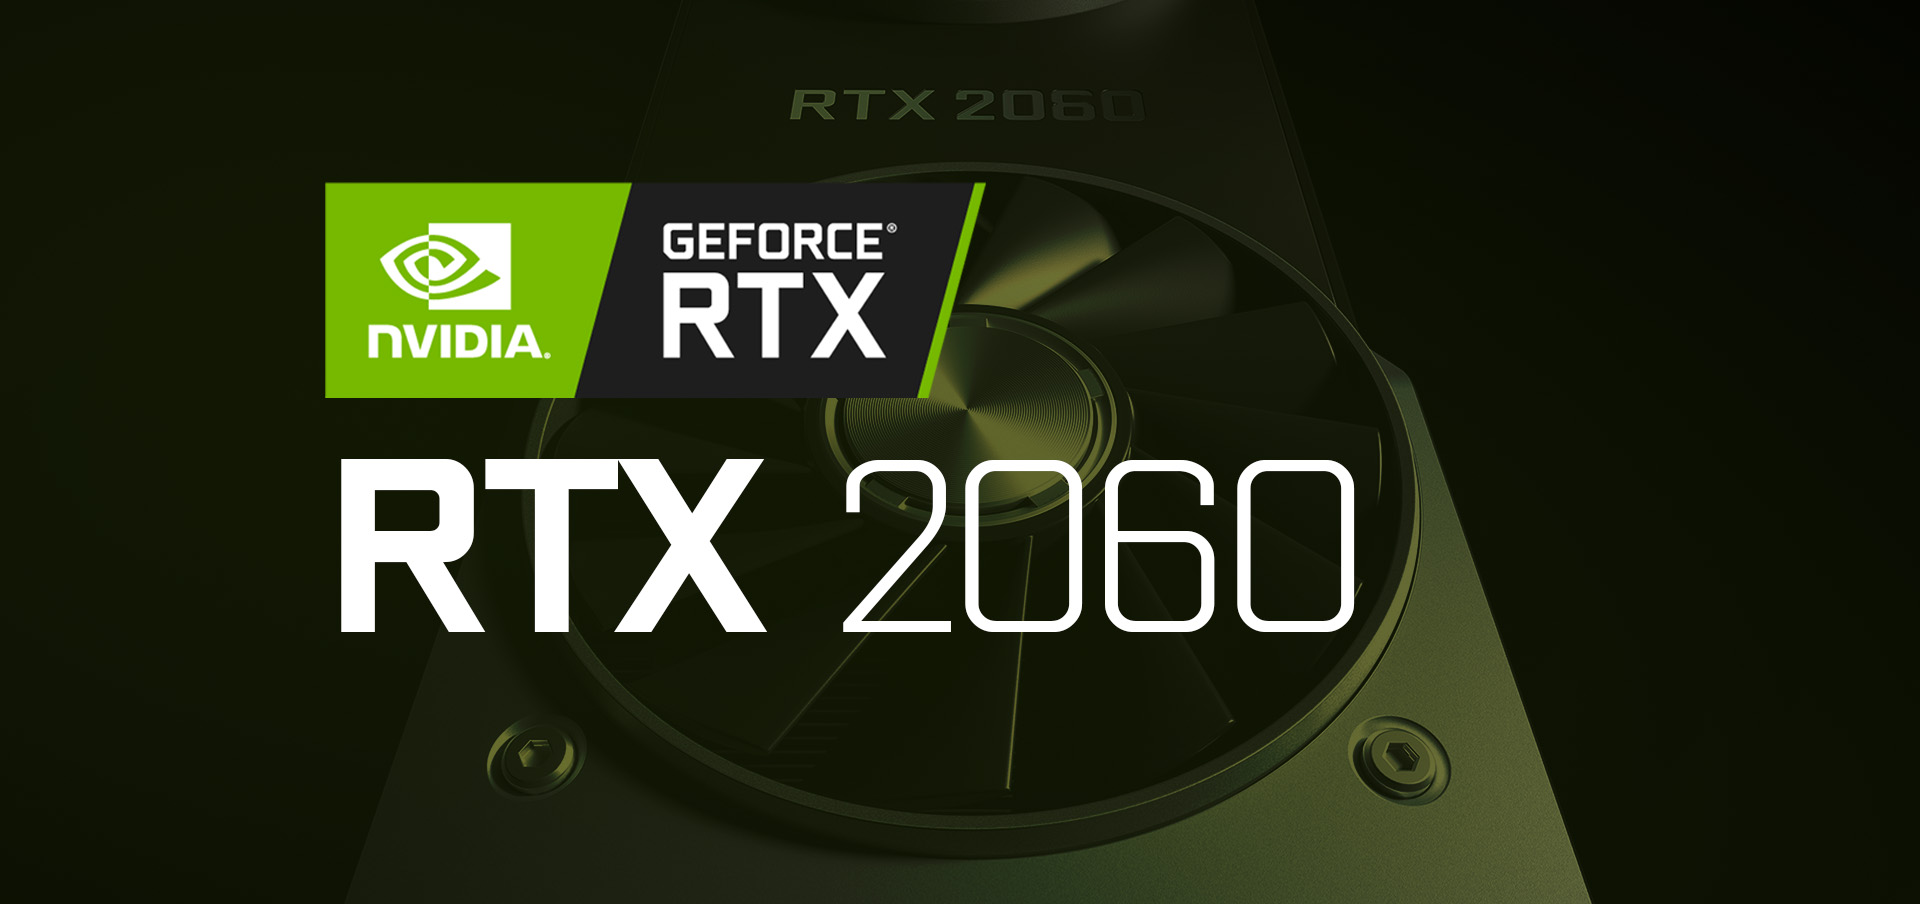 Nova kanadska kotacija RTX 2060 razkriva cene za 6 GB različico VRAM